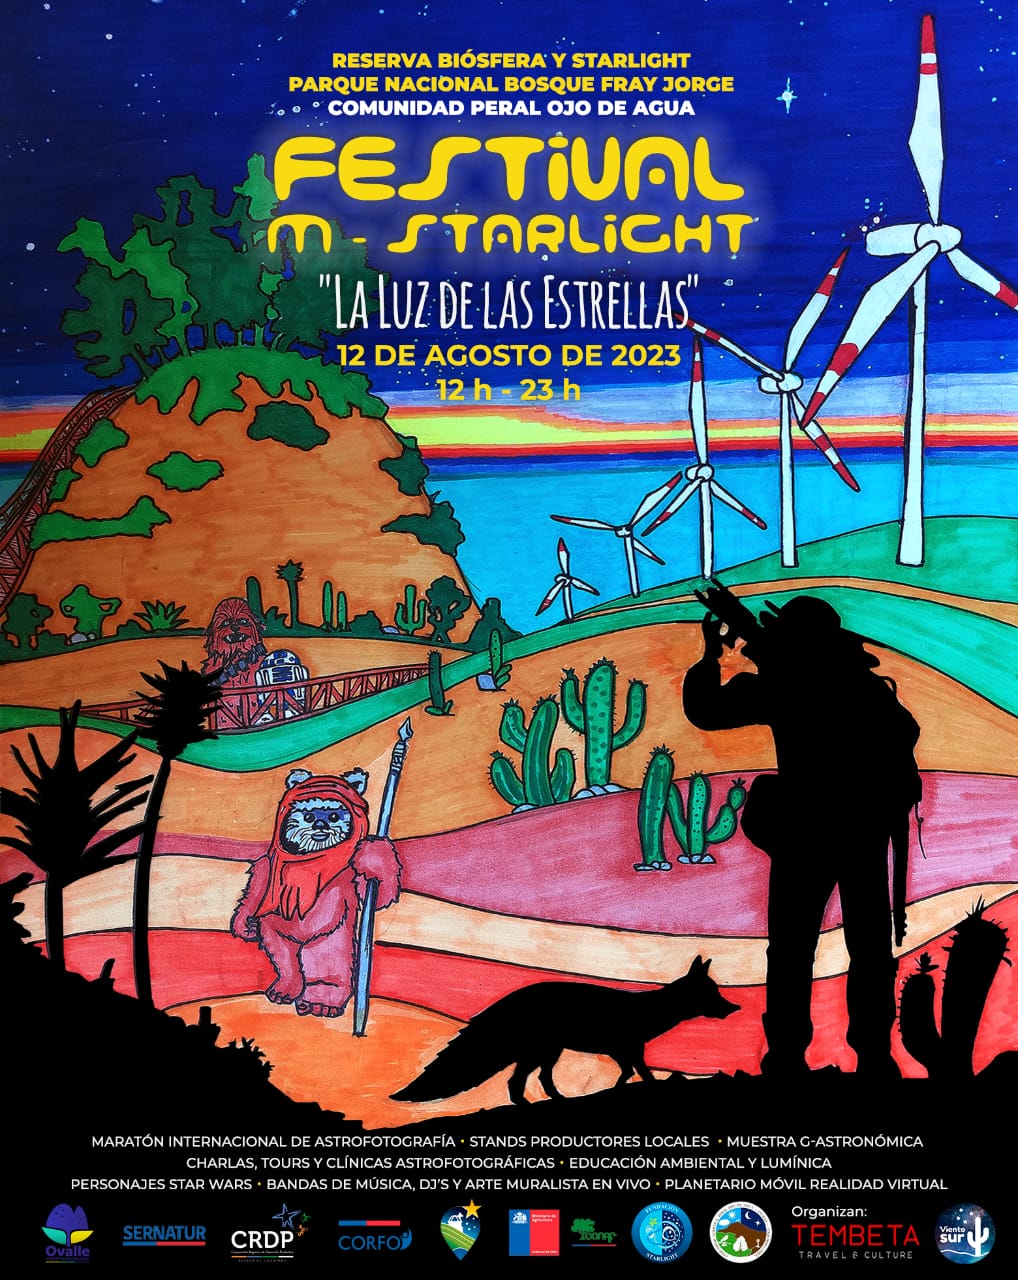 Invitan a Festival y Maratón de Astrofotografía en el Parque Nacional Bosque Fray Jorge